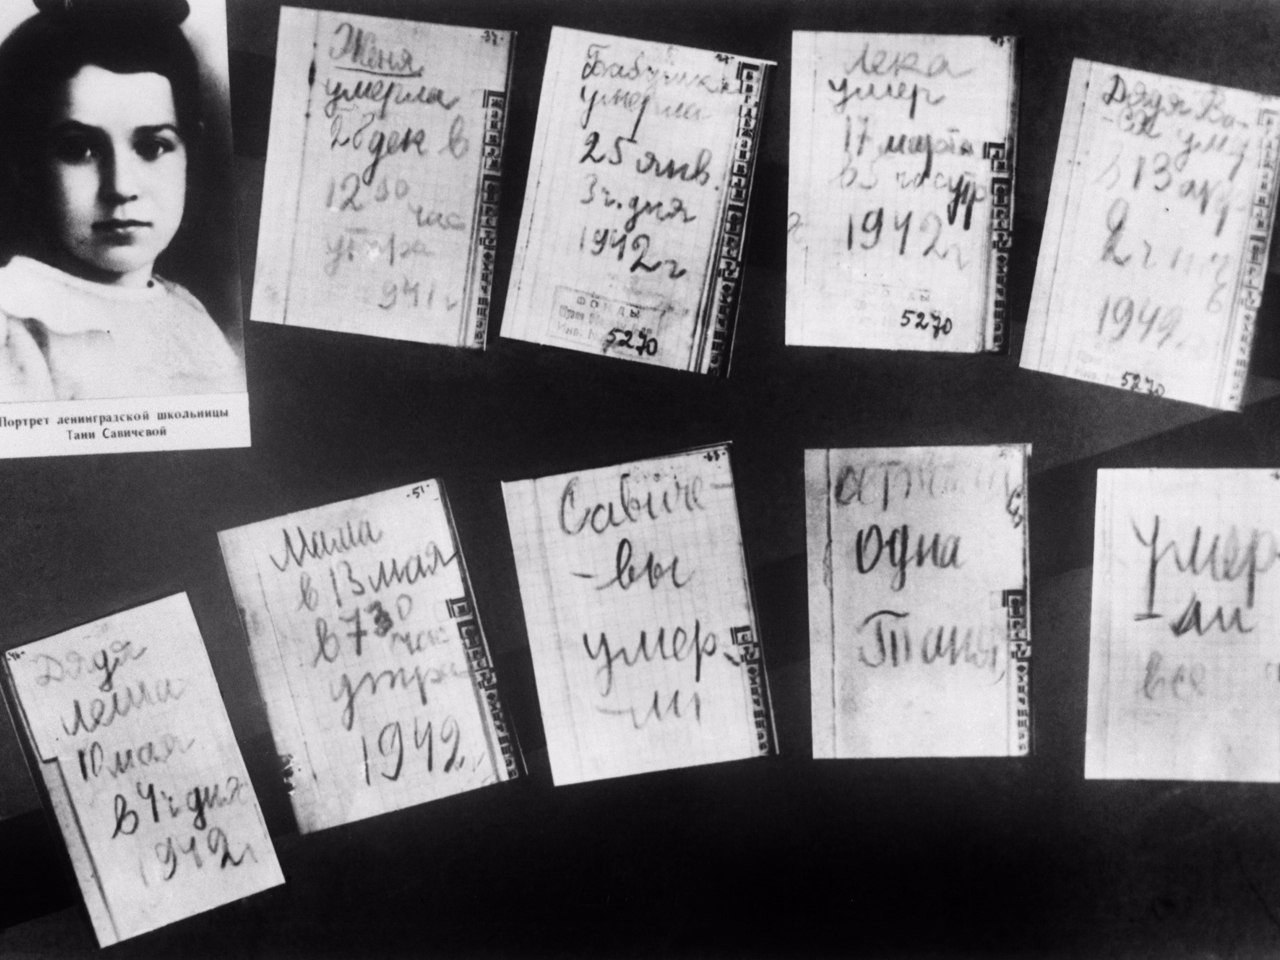 Дневник тани савичевой из блокадного ленинграда фото страниц